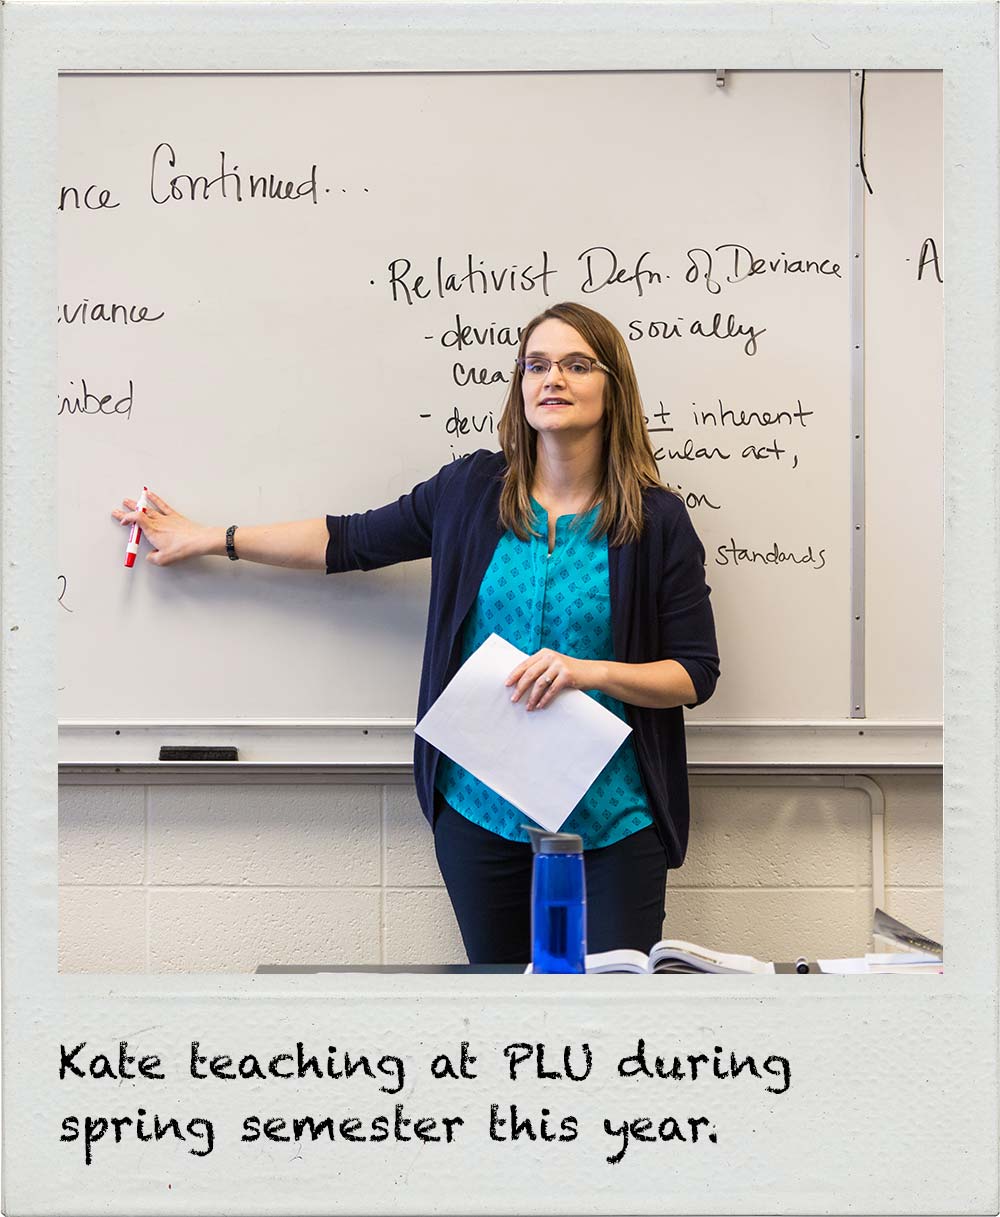 Kate teaching at PLU during spring semester this year.